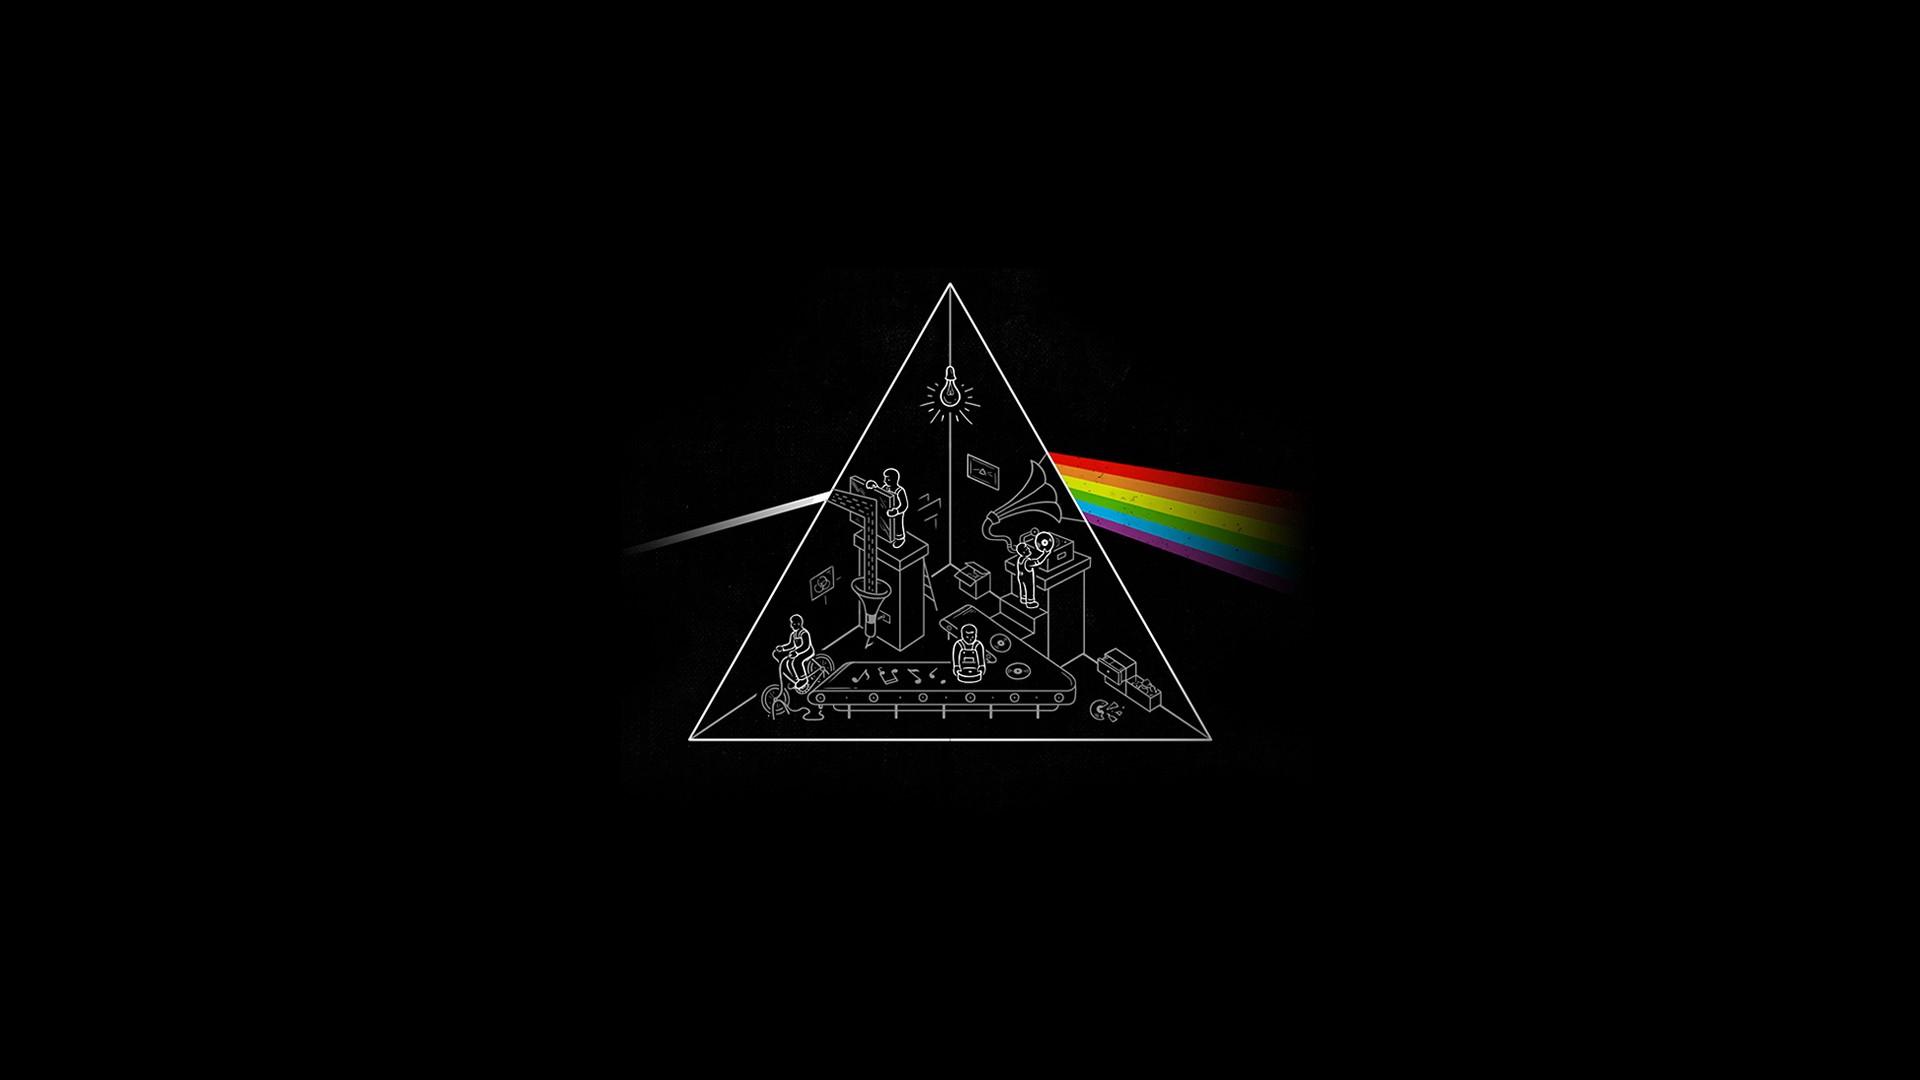 73+] Pink Floyd Desktop Wallpapers